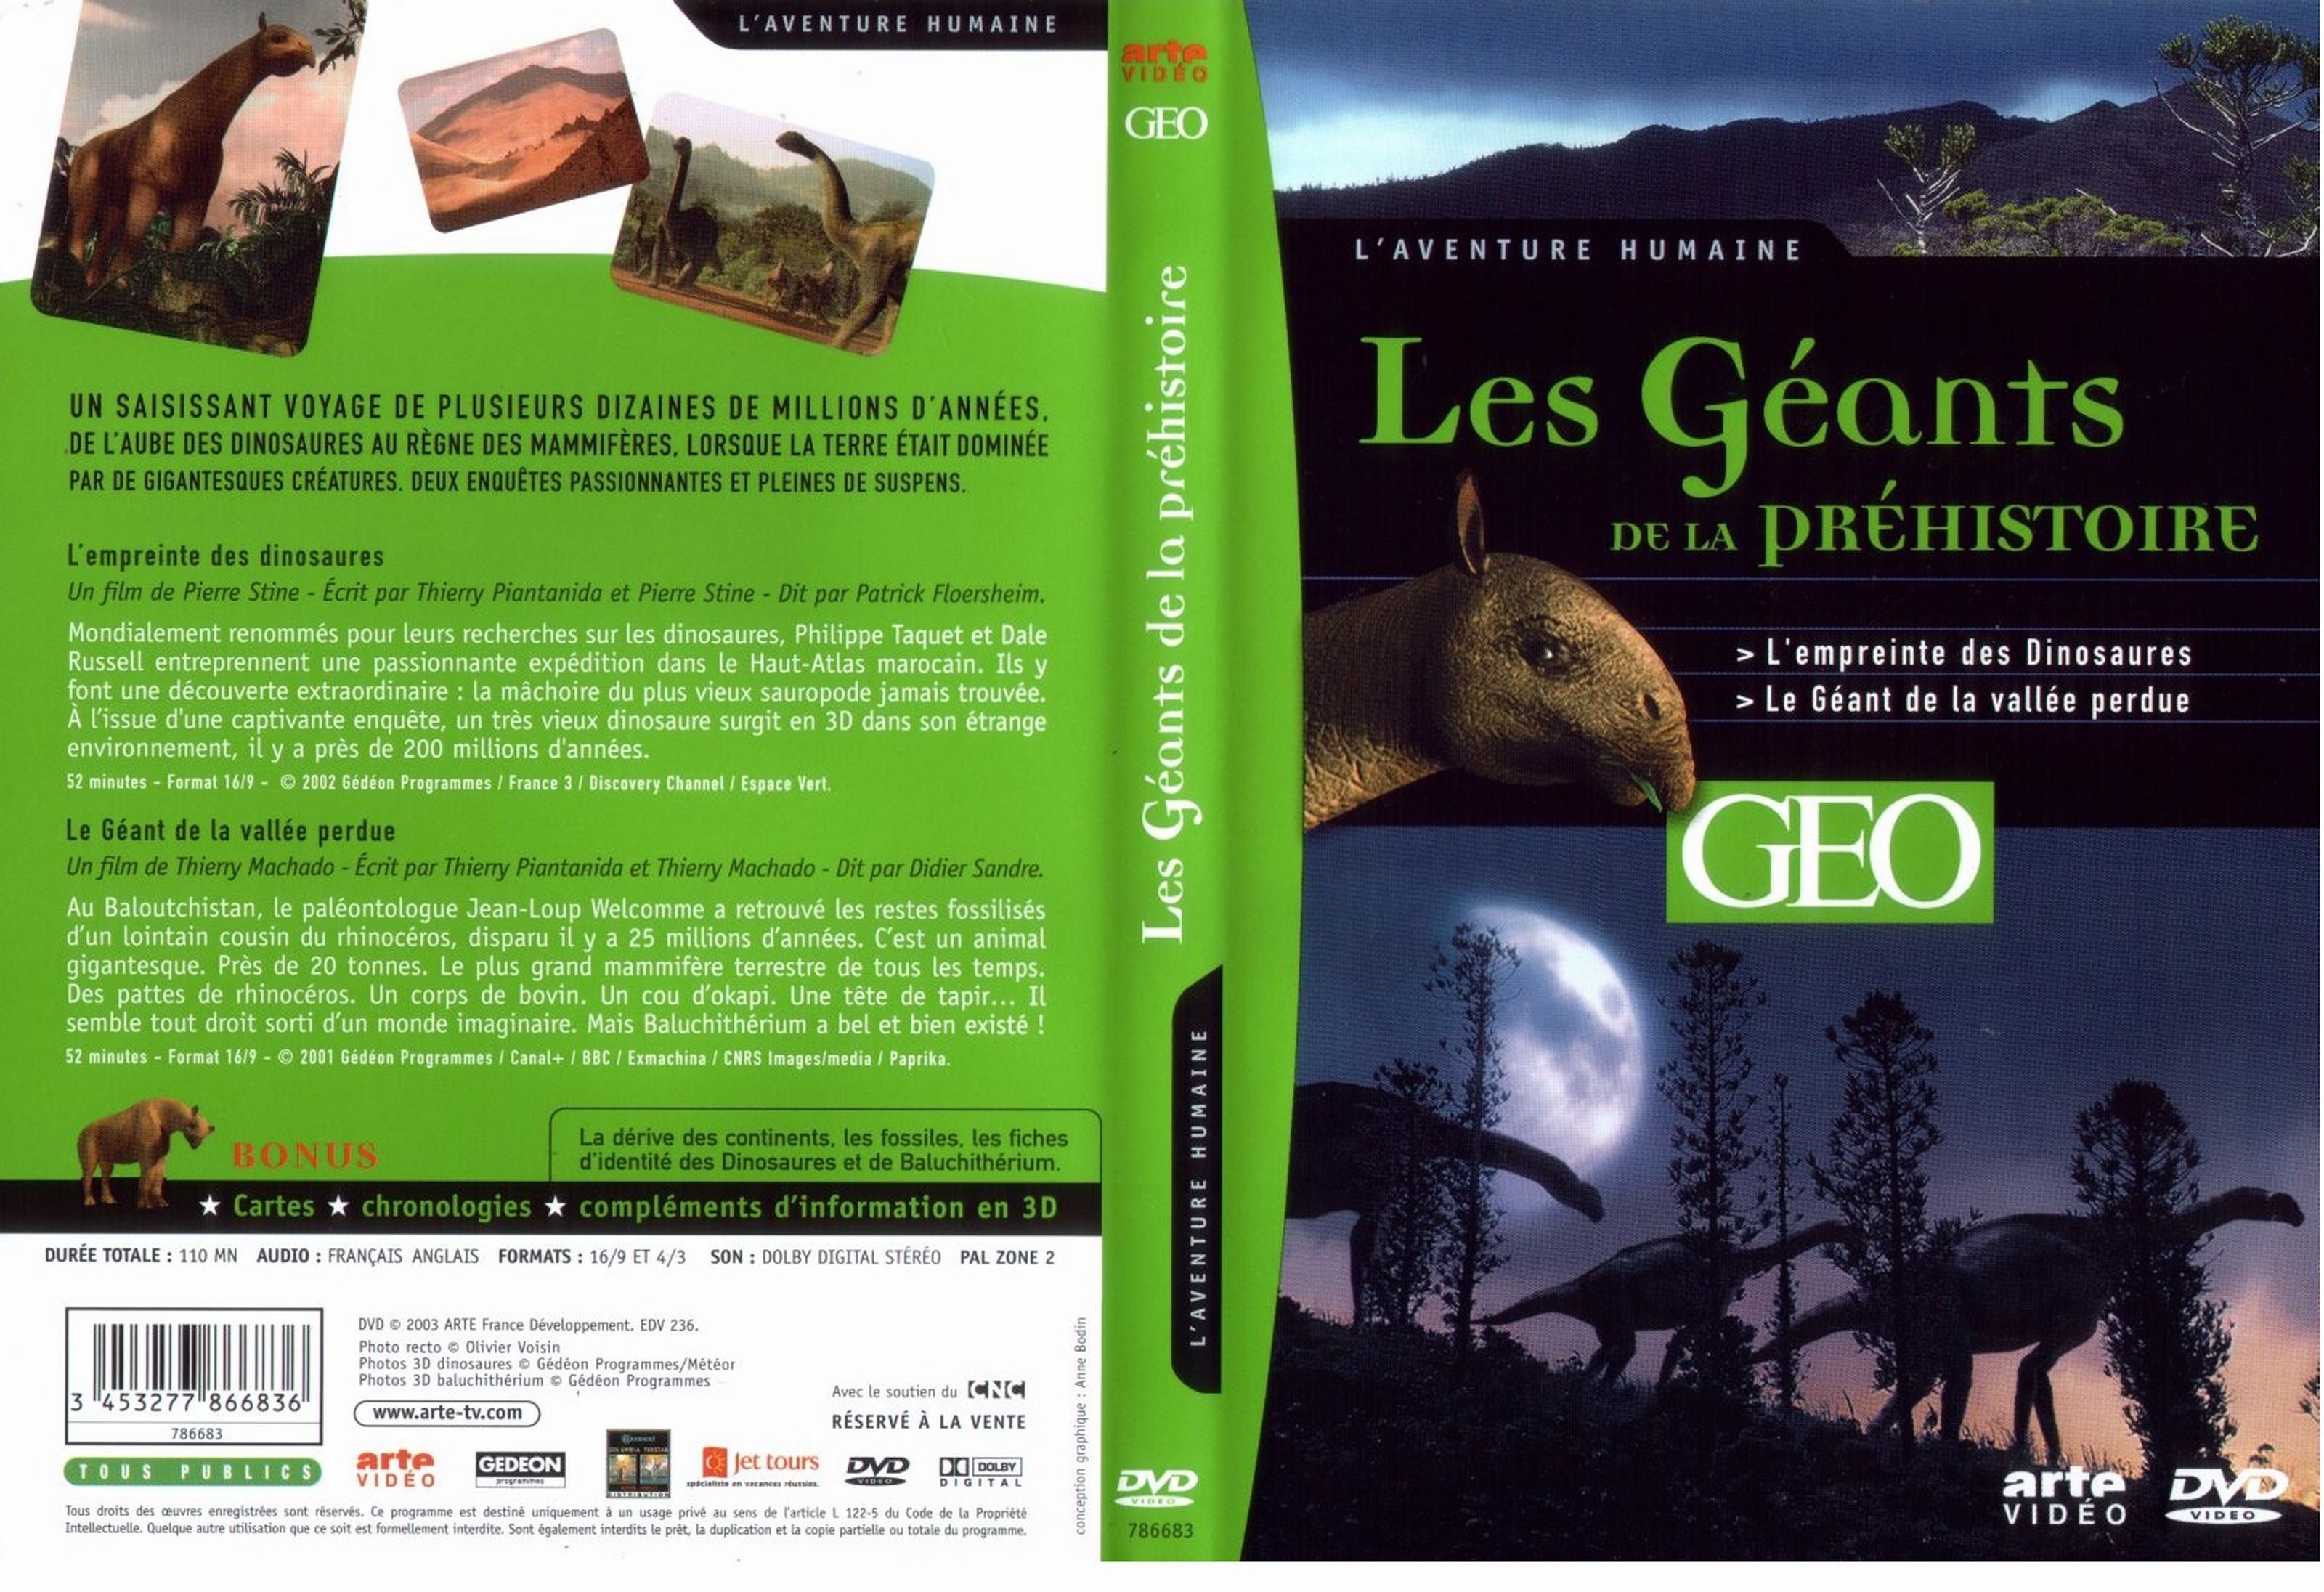 Jaquette DVD GEO - Les gants de la prhistoire